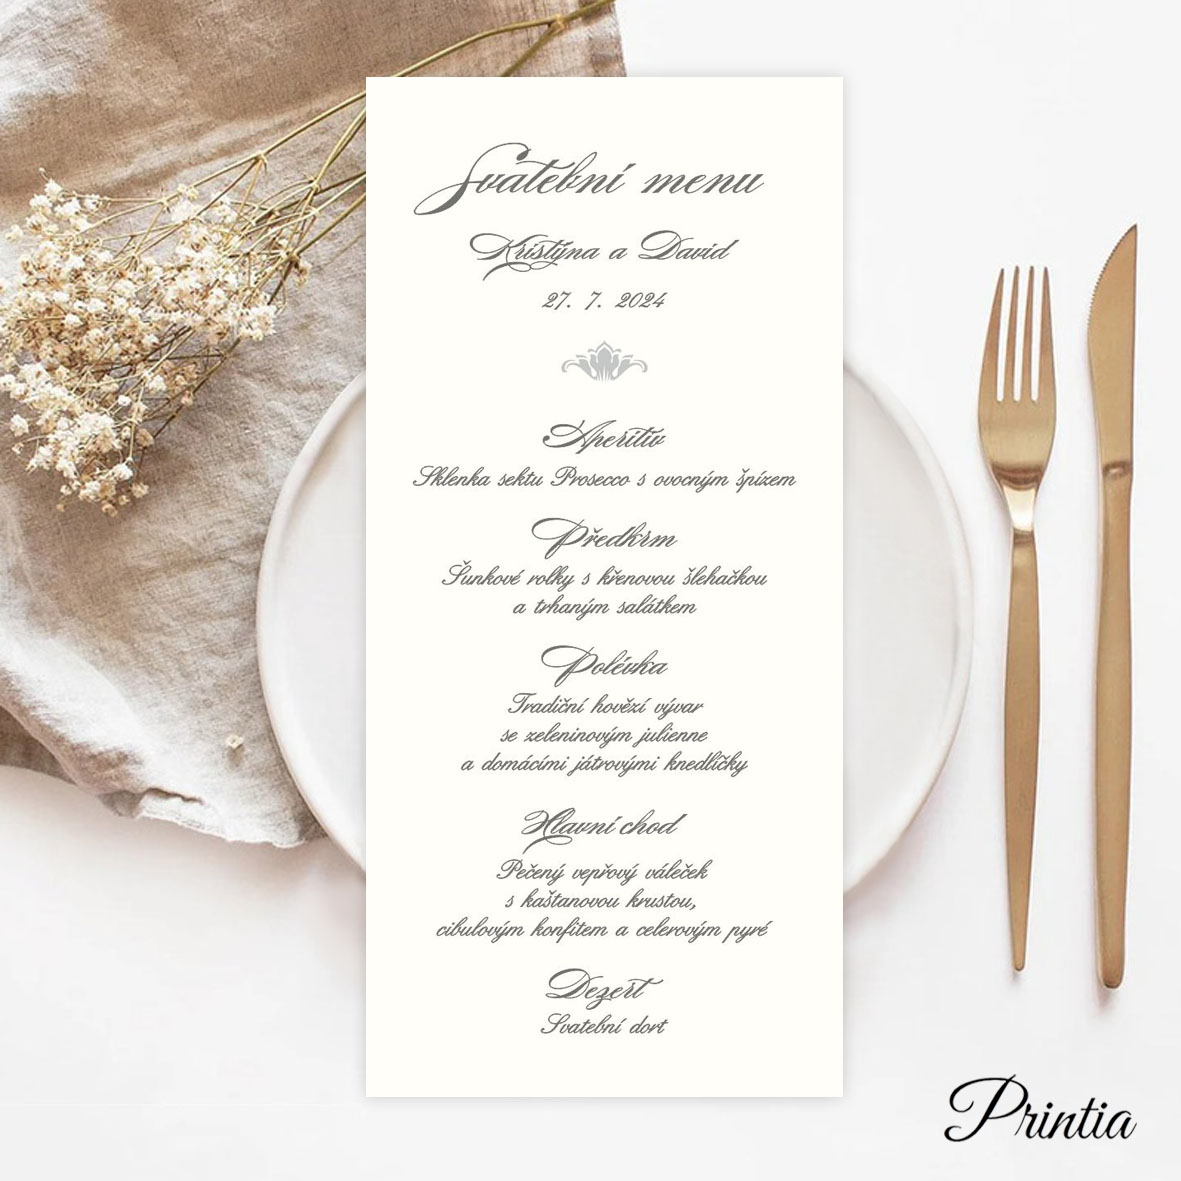 Wedding menu with blue ornament